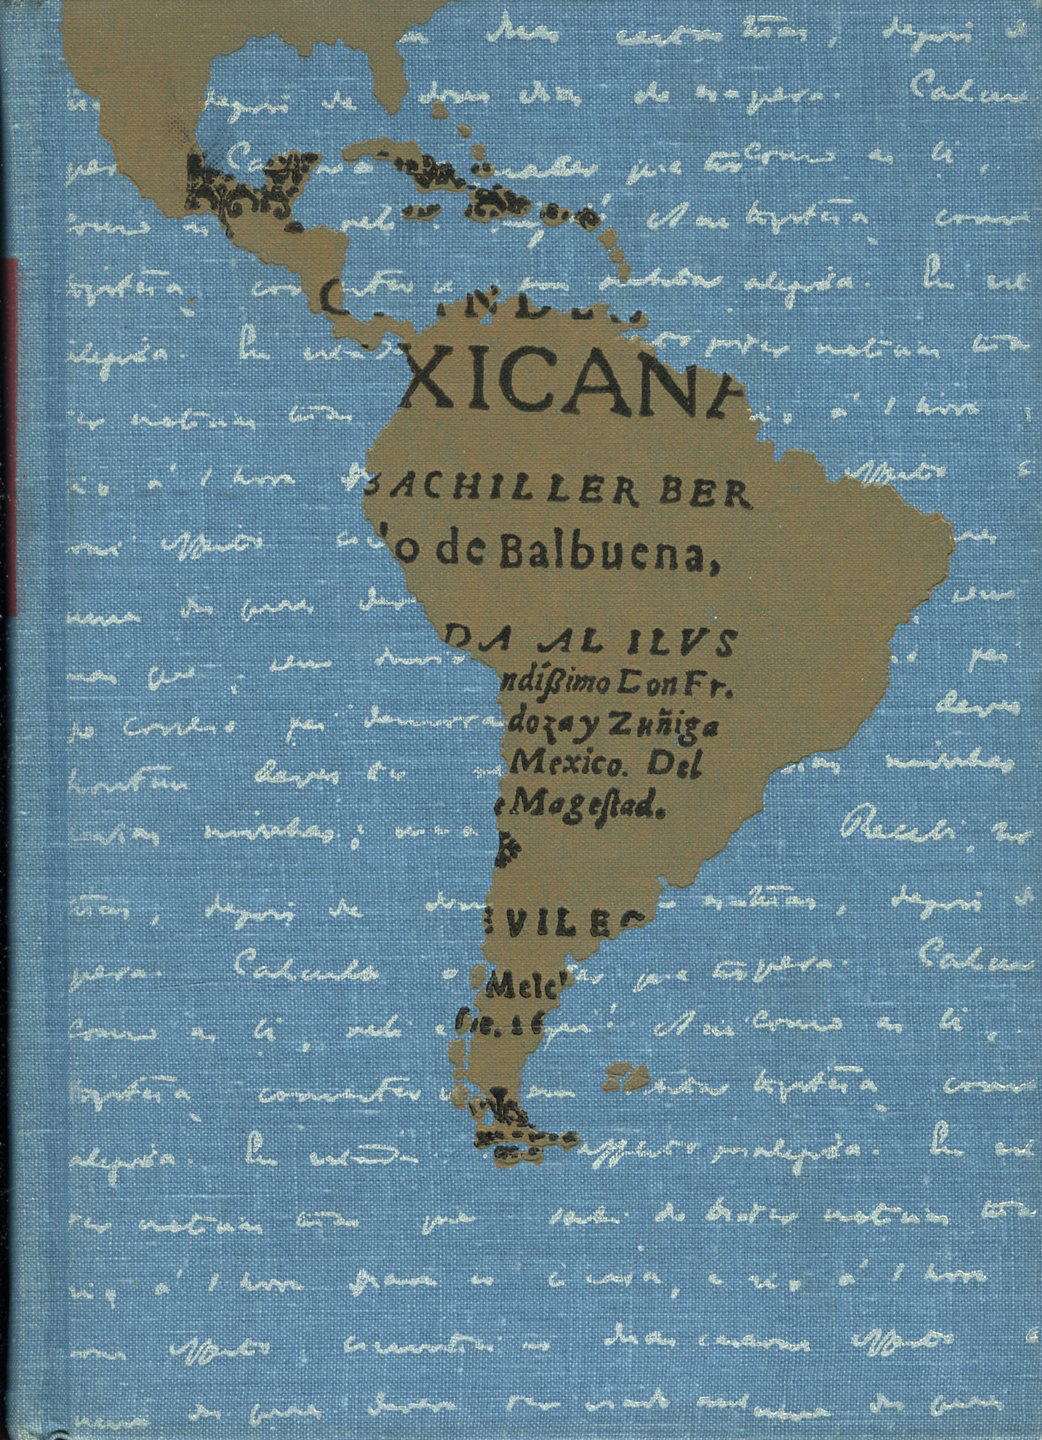 Dějiny literatur Latinské Ameriky